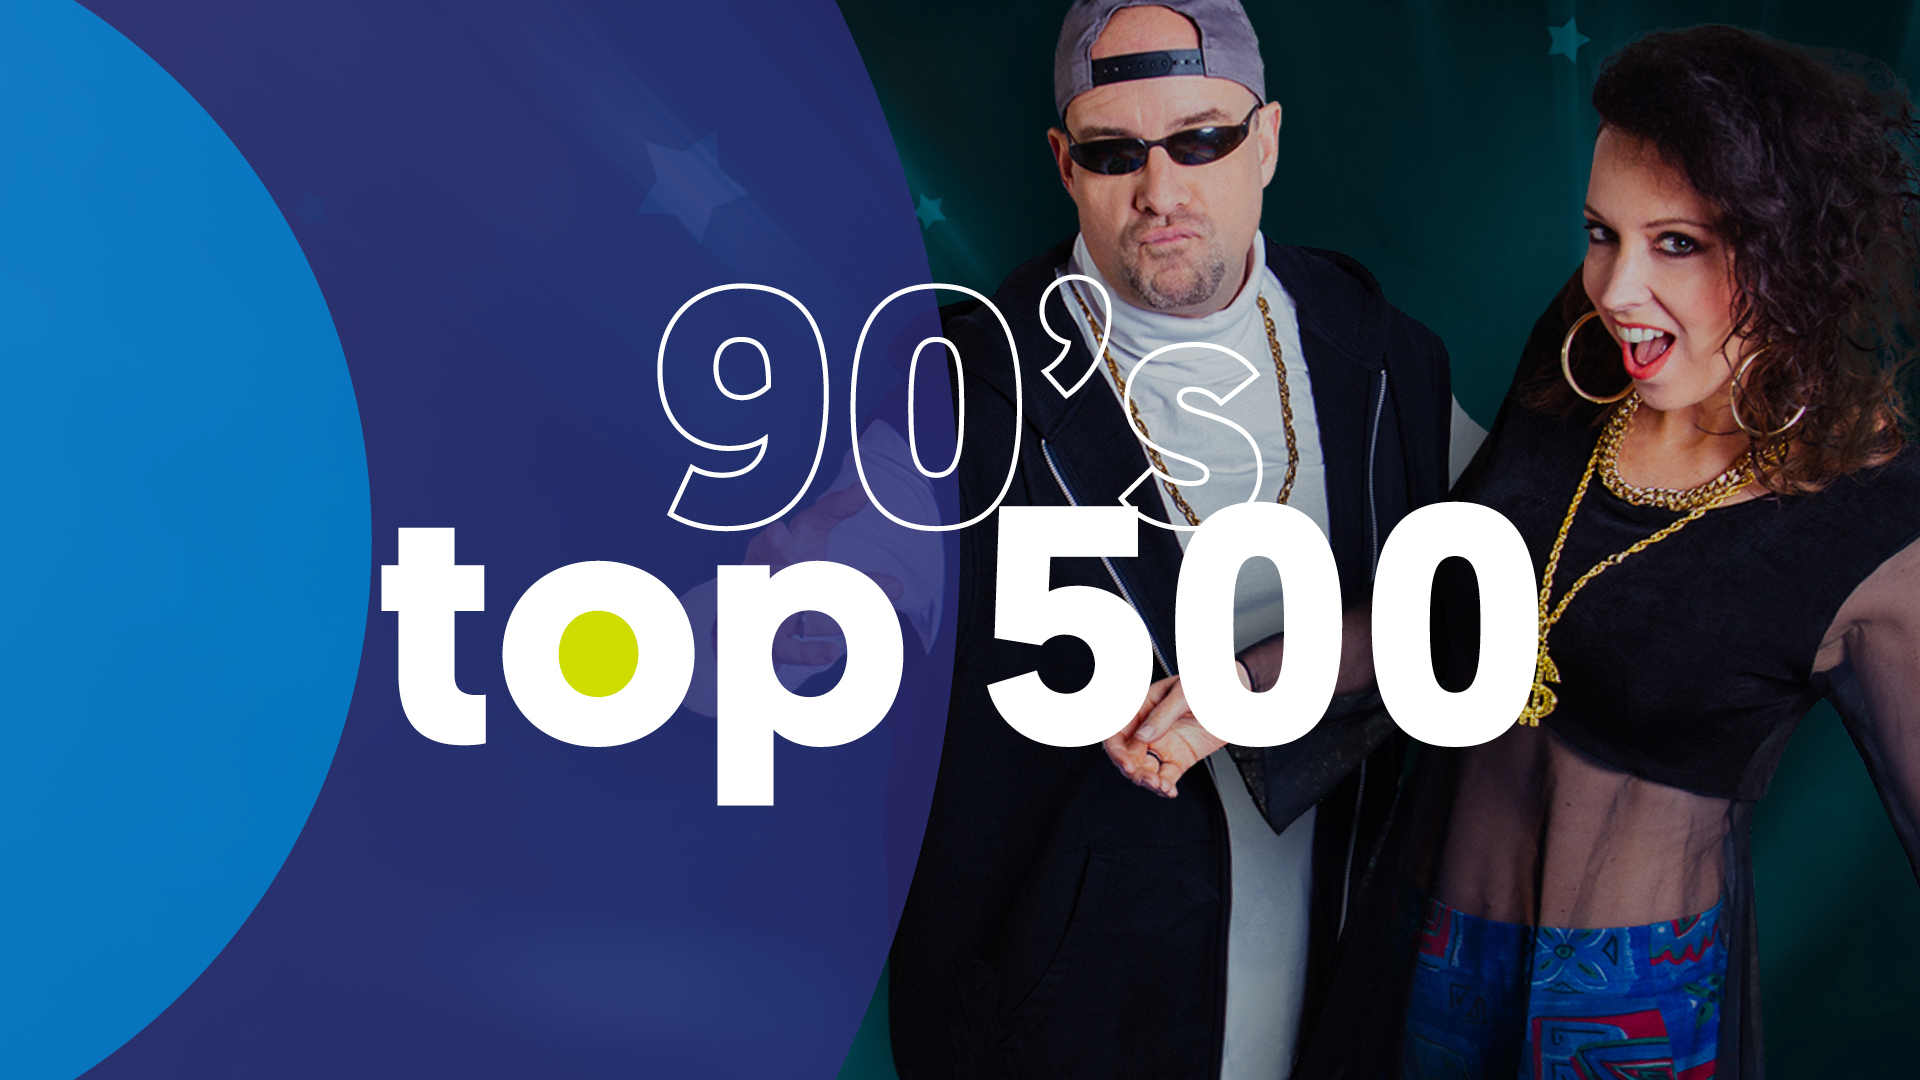 Joe 90's Top 500